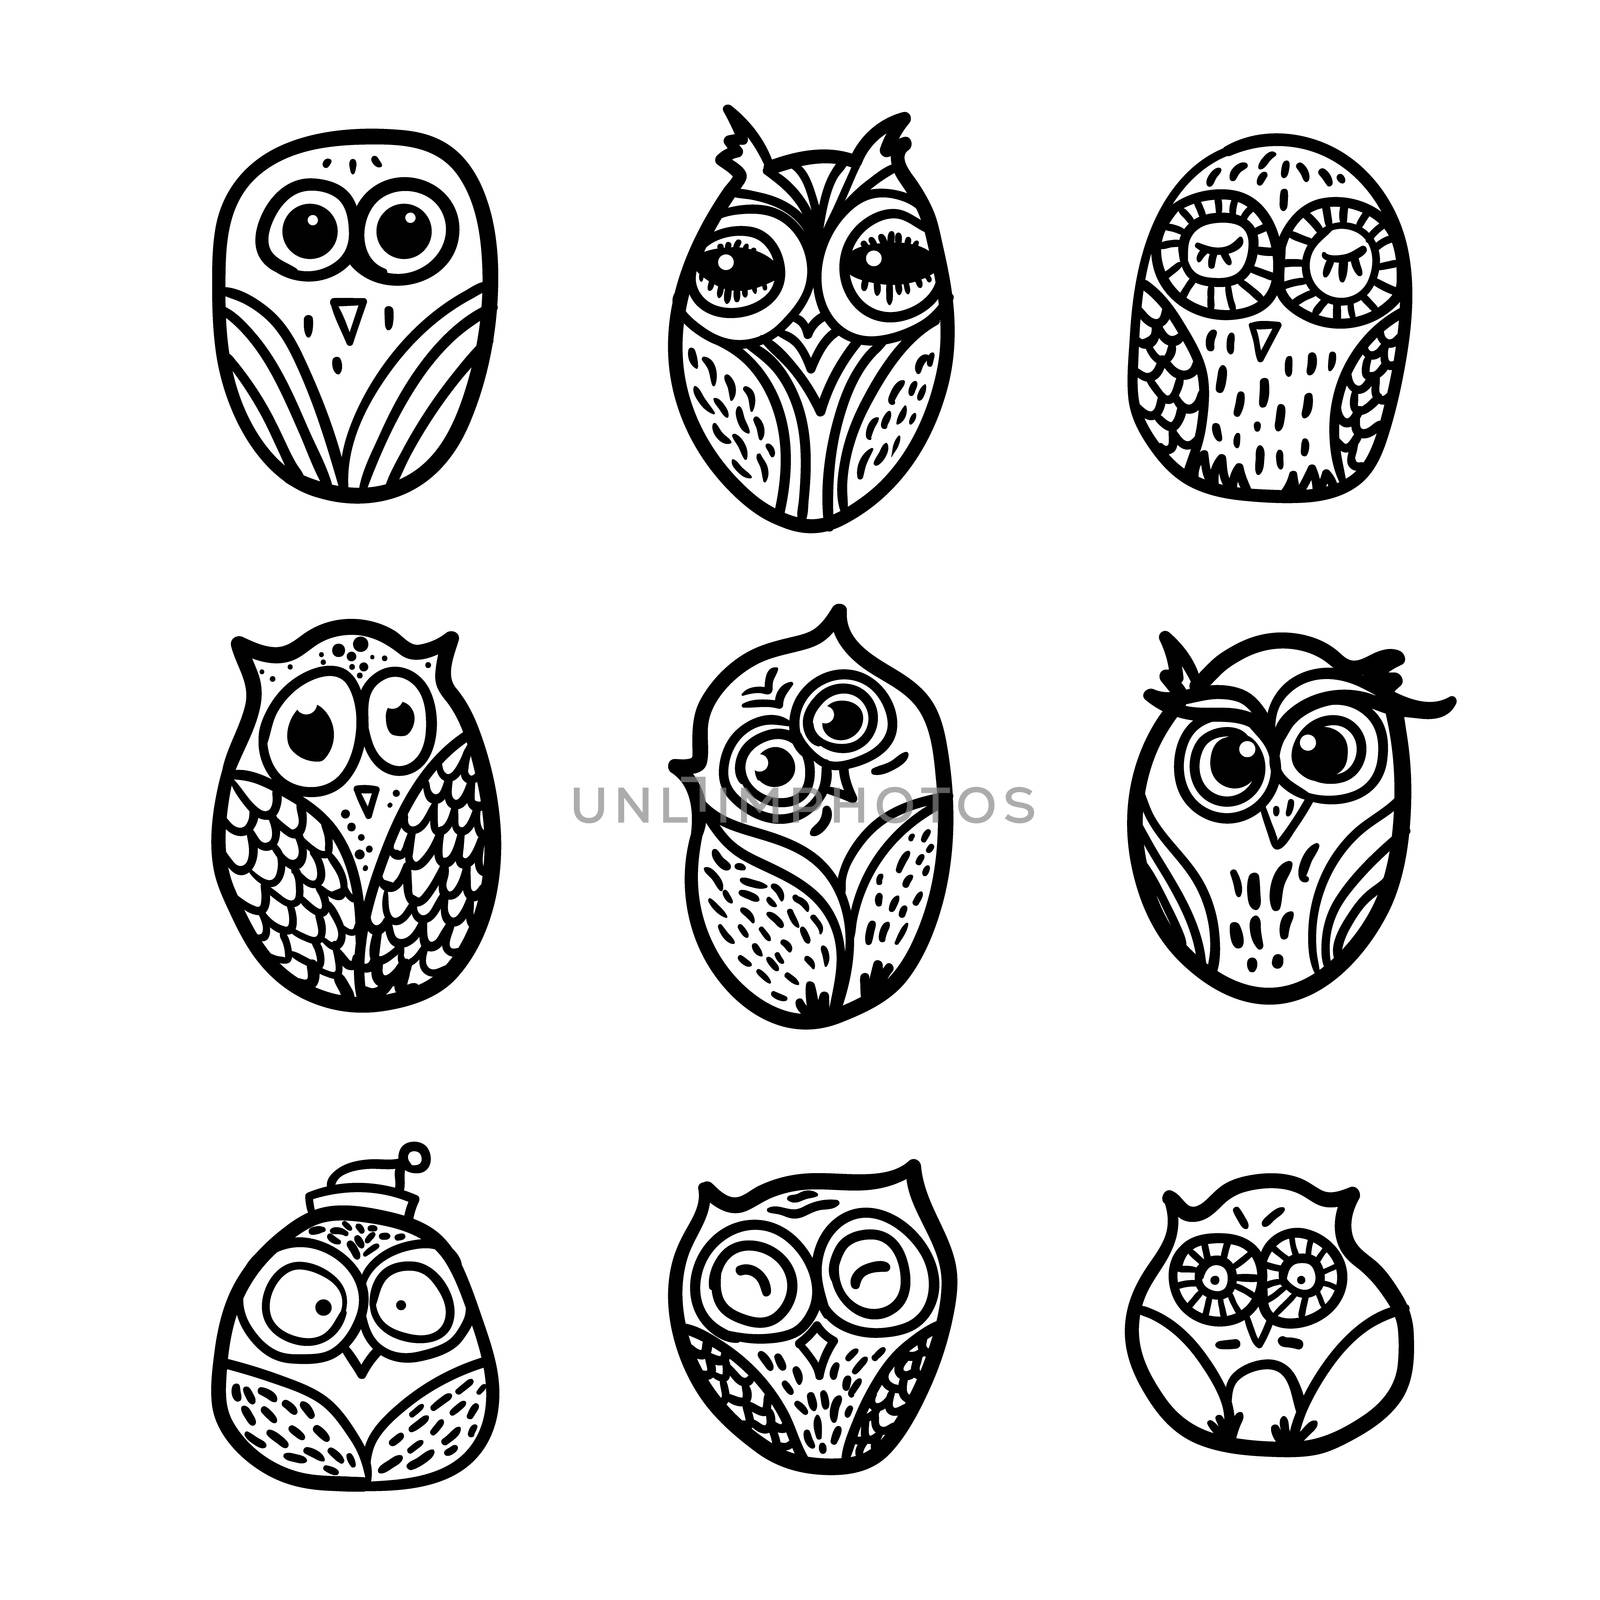 Owls hand drawn set by barsrsind